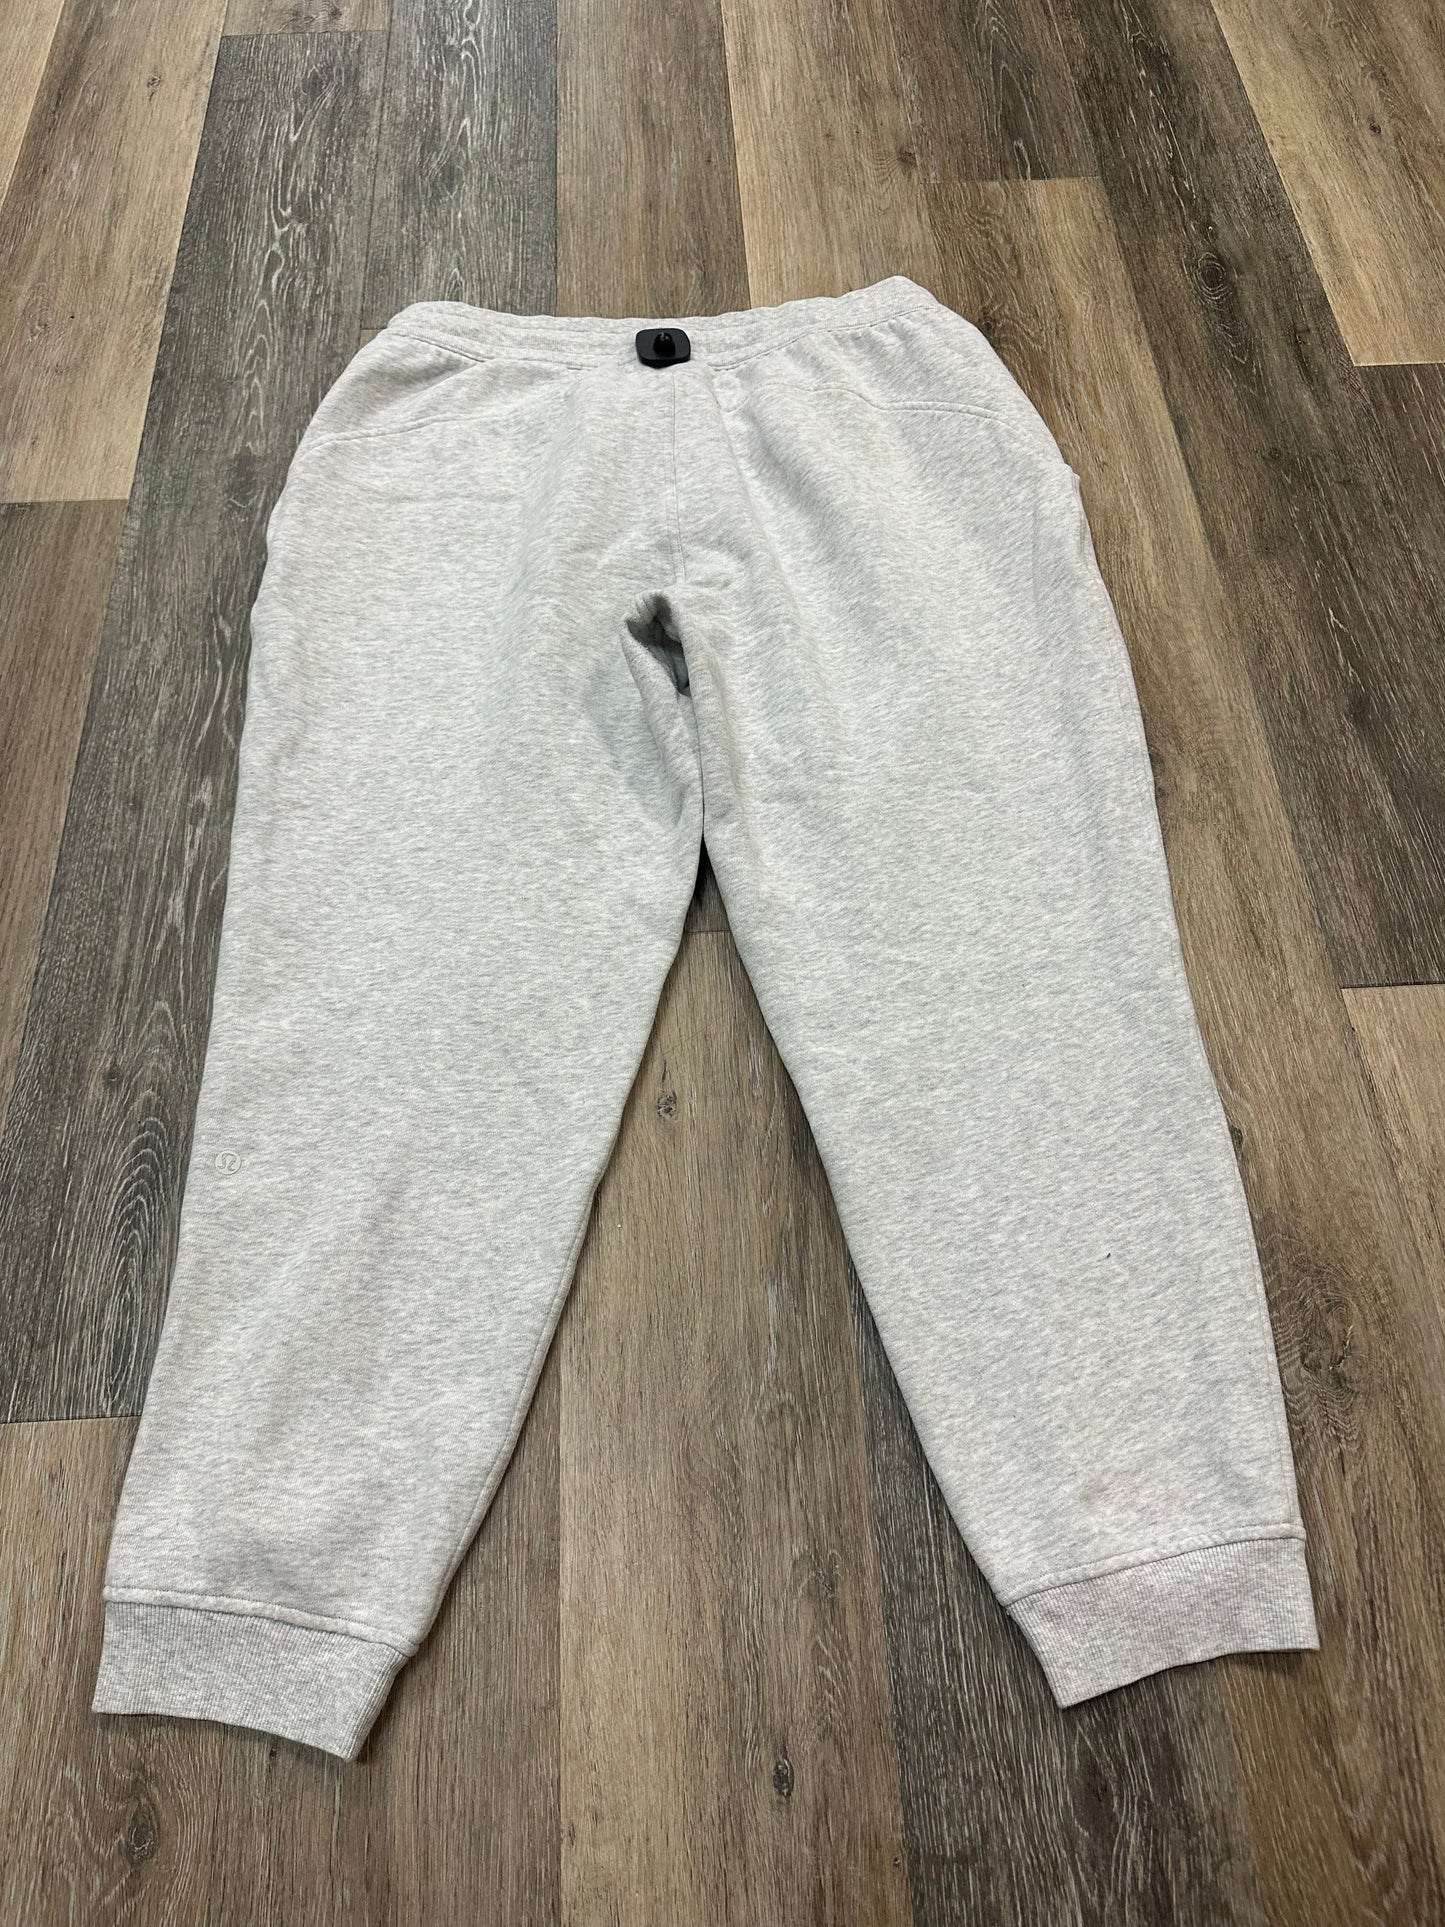 Grey Athletic Pants Lululemon, Size 14